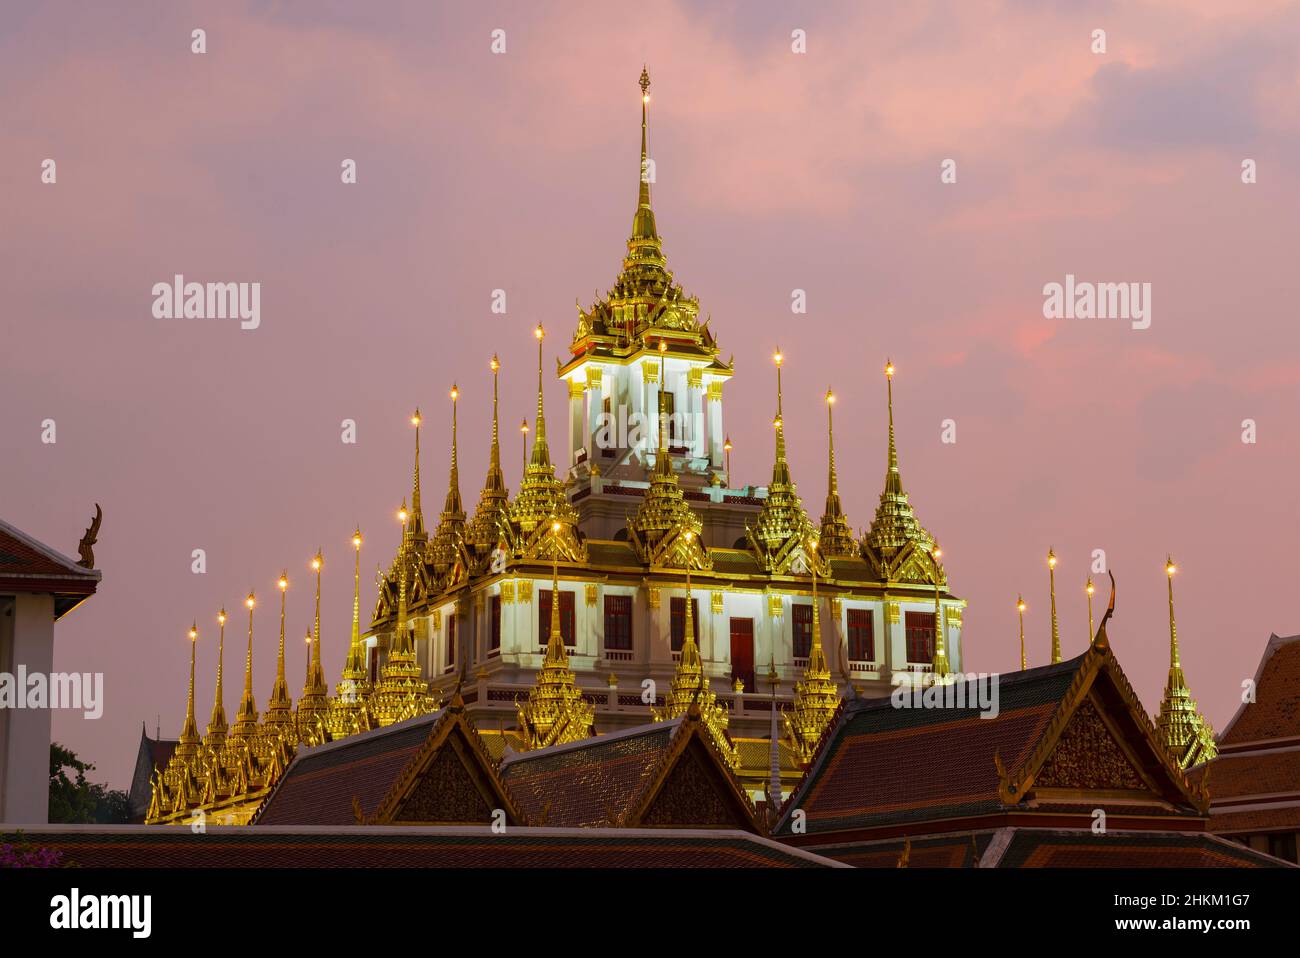 Haut de l'ancienne pagode Loha Prasat du temple bouddhiste Wat Ratchanatdaram Woravihara contre le ciel du soir.Bangkok, Thaïlande Banque D'Images